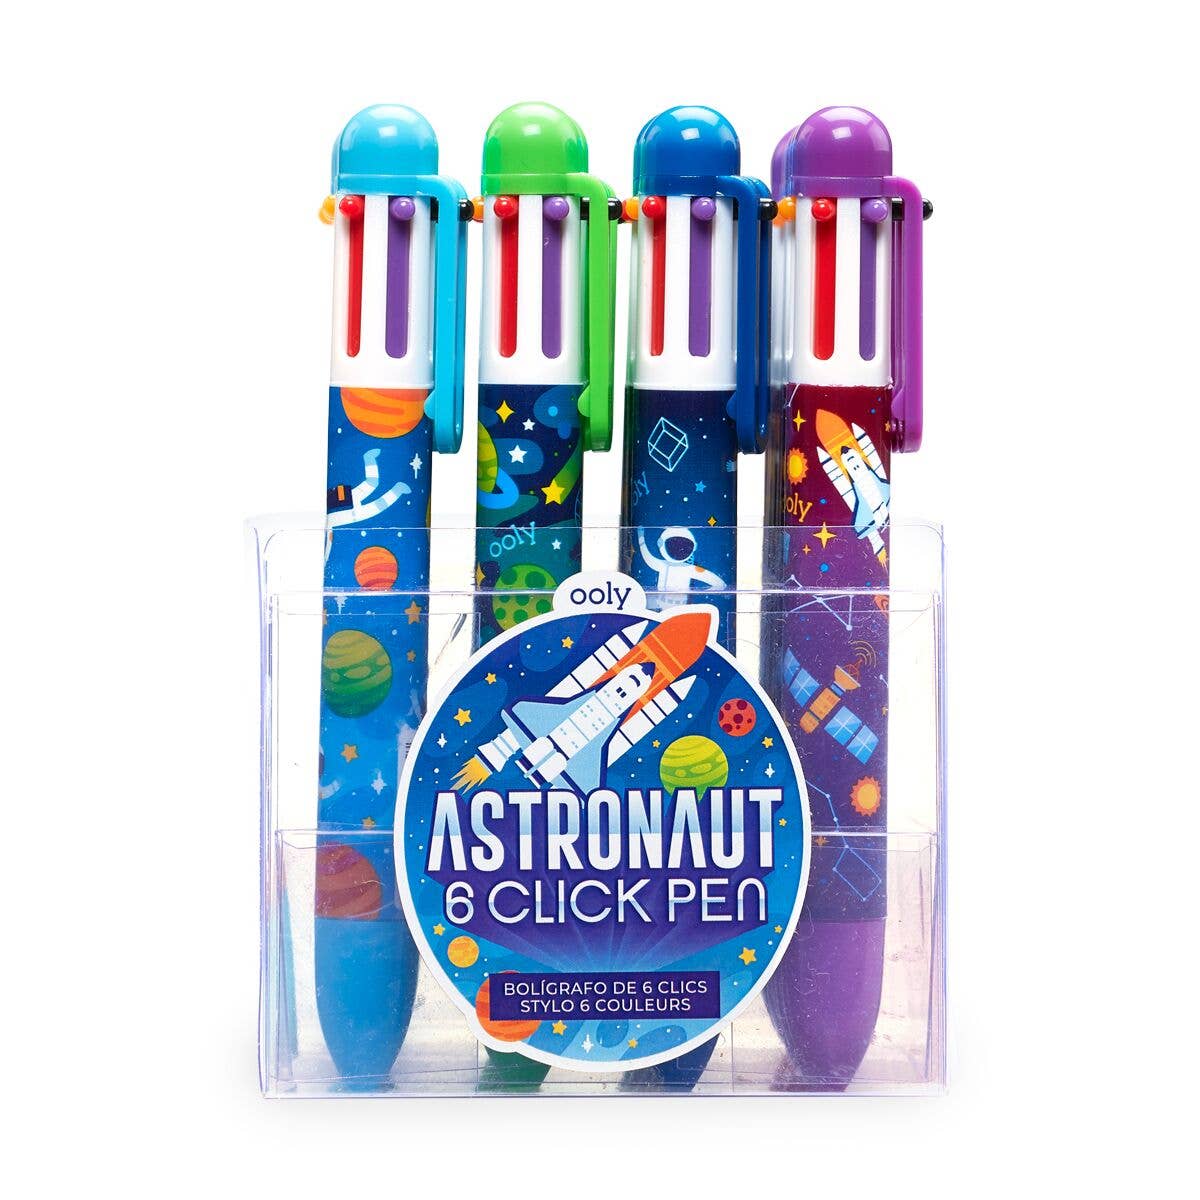 6 Click Pen - Astronaut